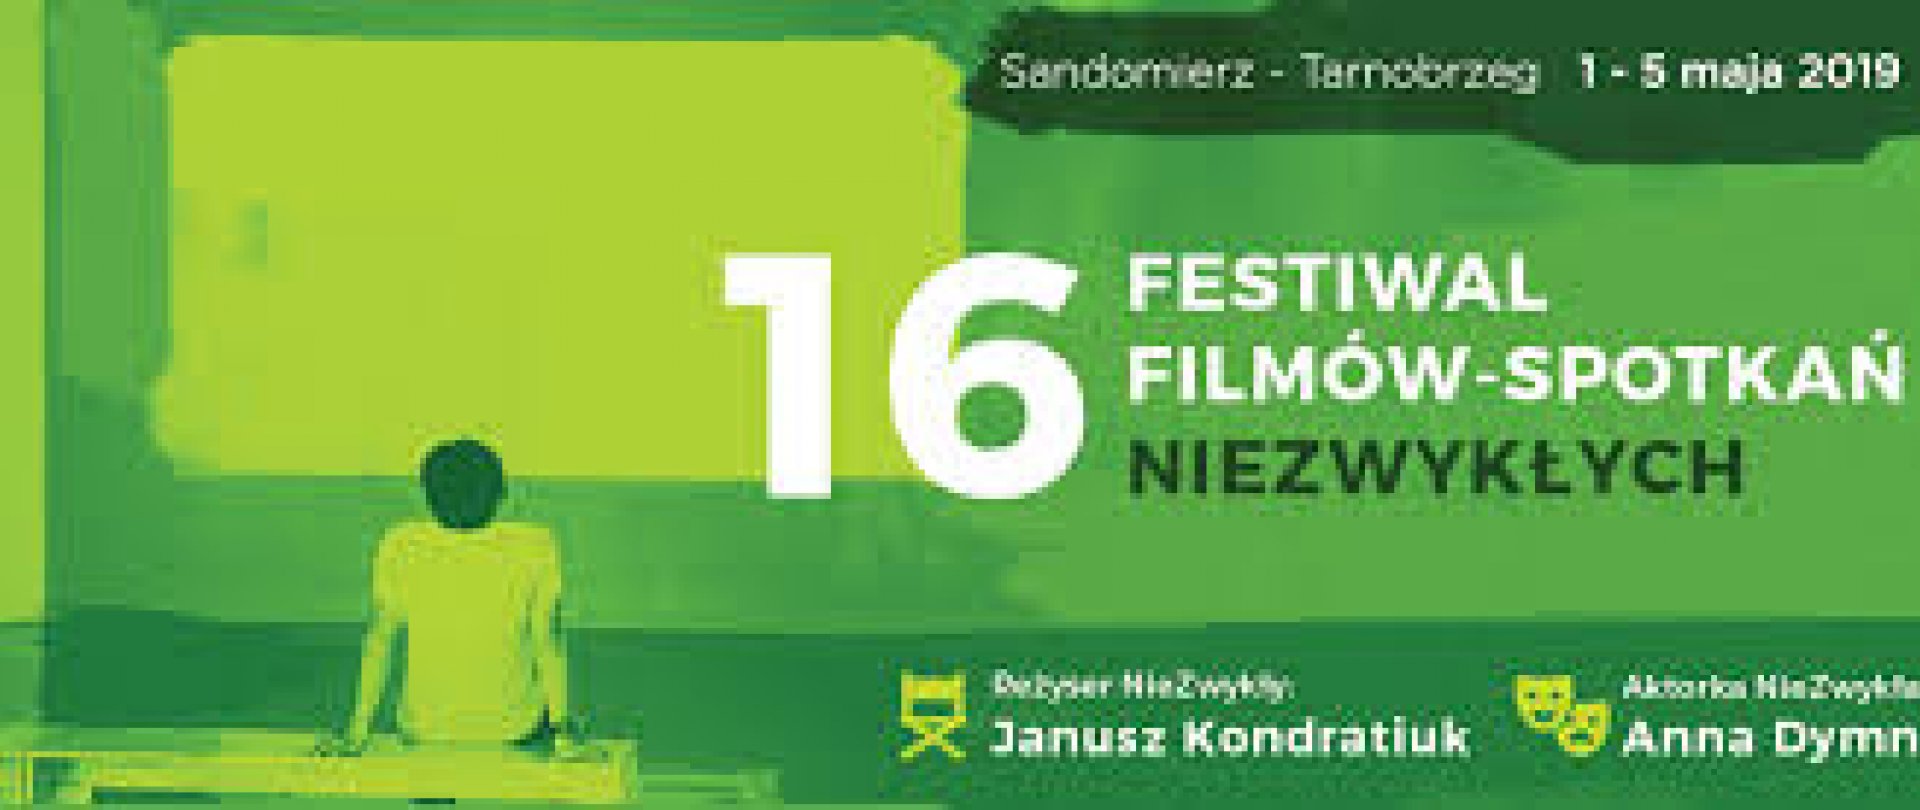 XVI Festiwal Filmów - Spotkań NieZwykłych  1 - 5 maja 2019 